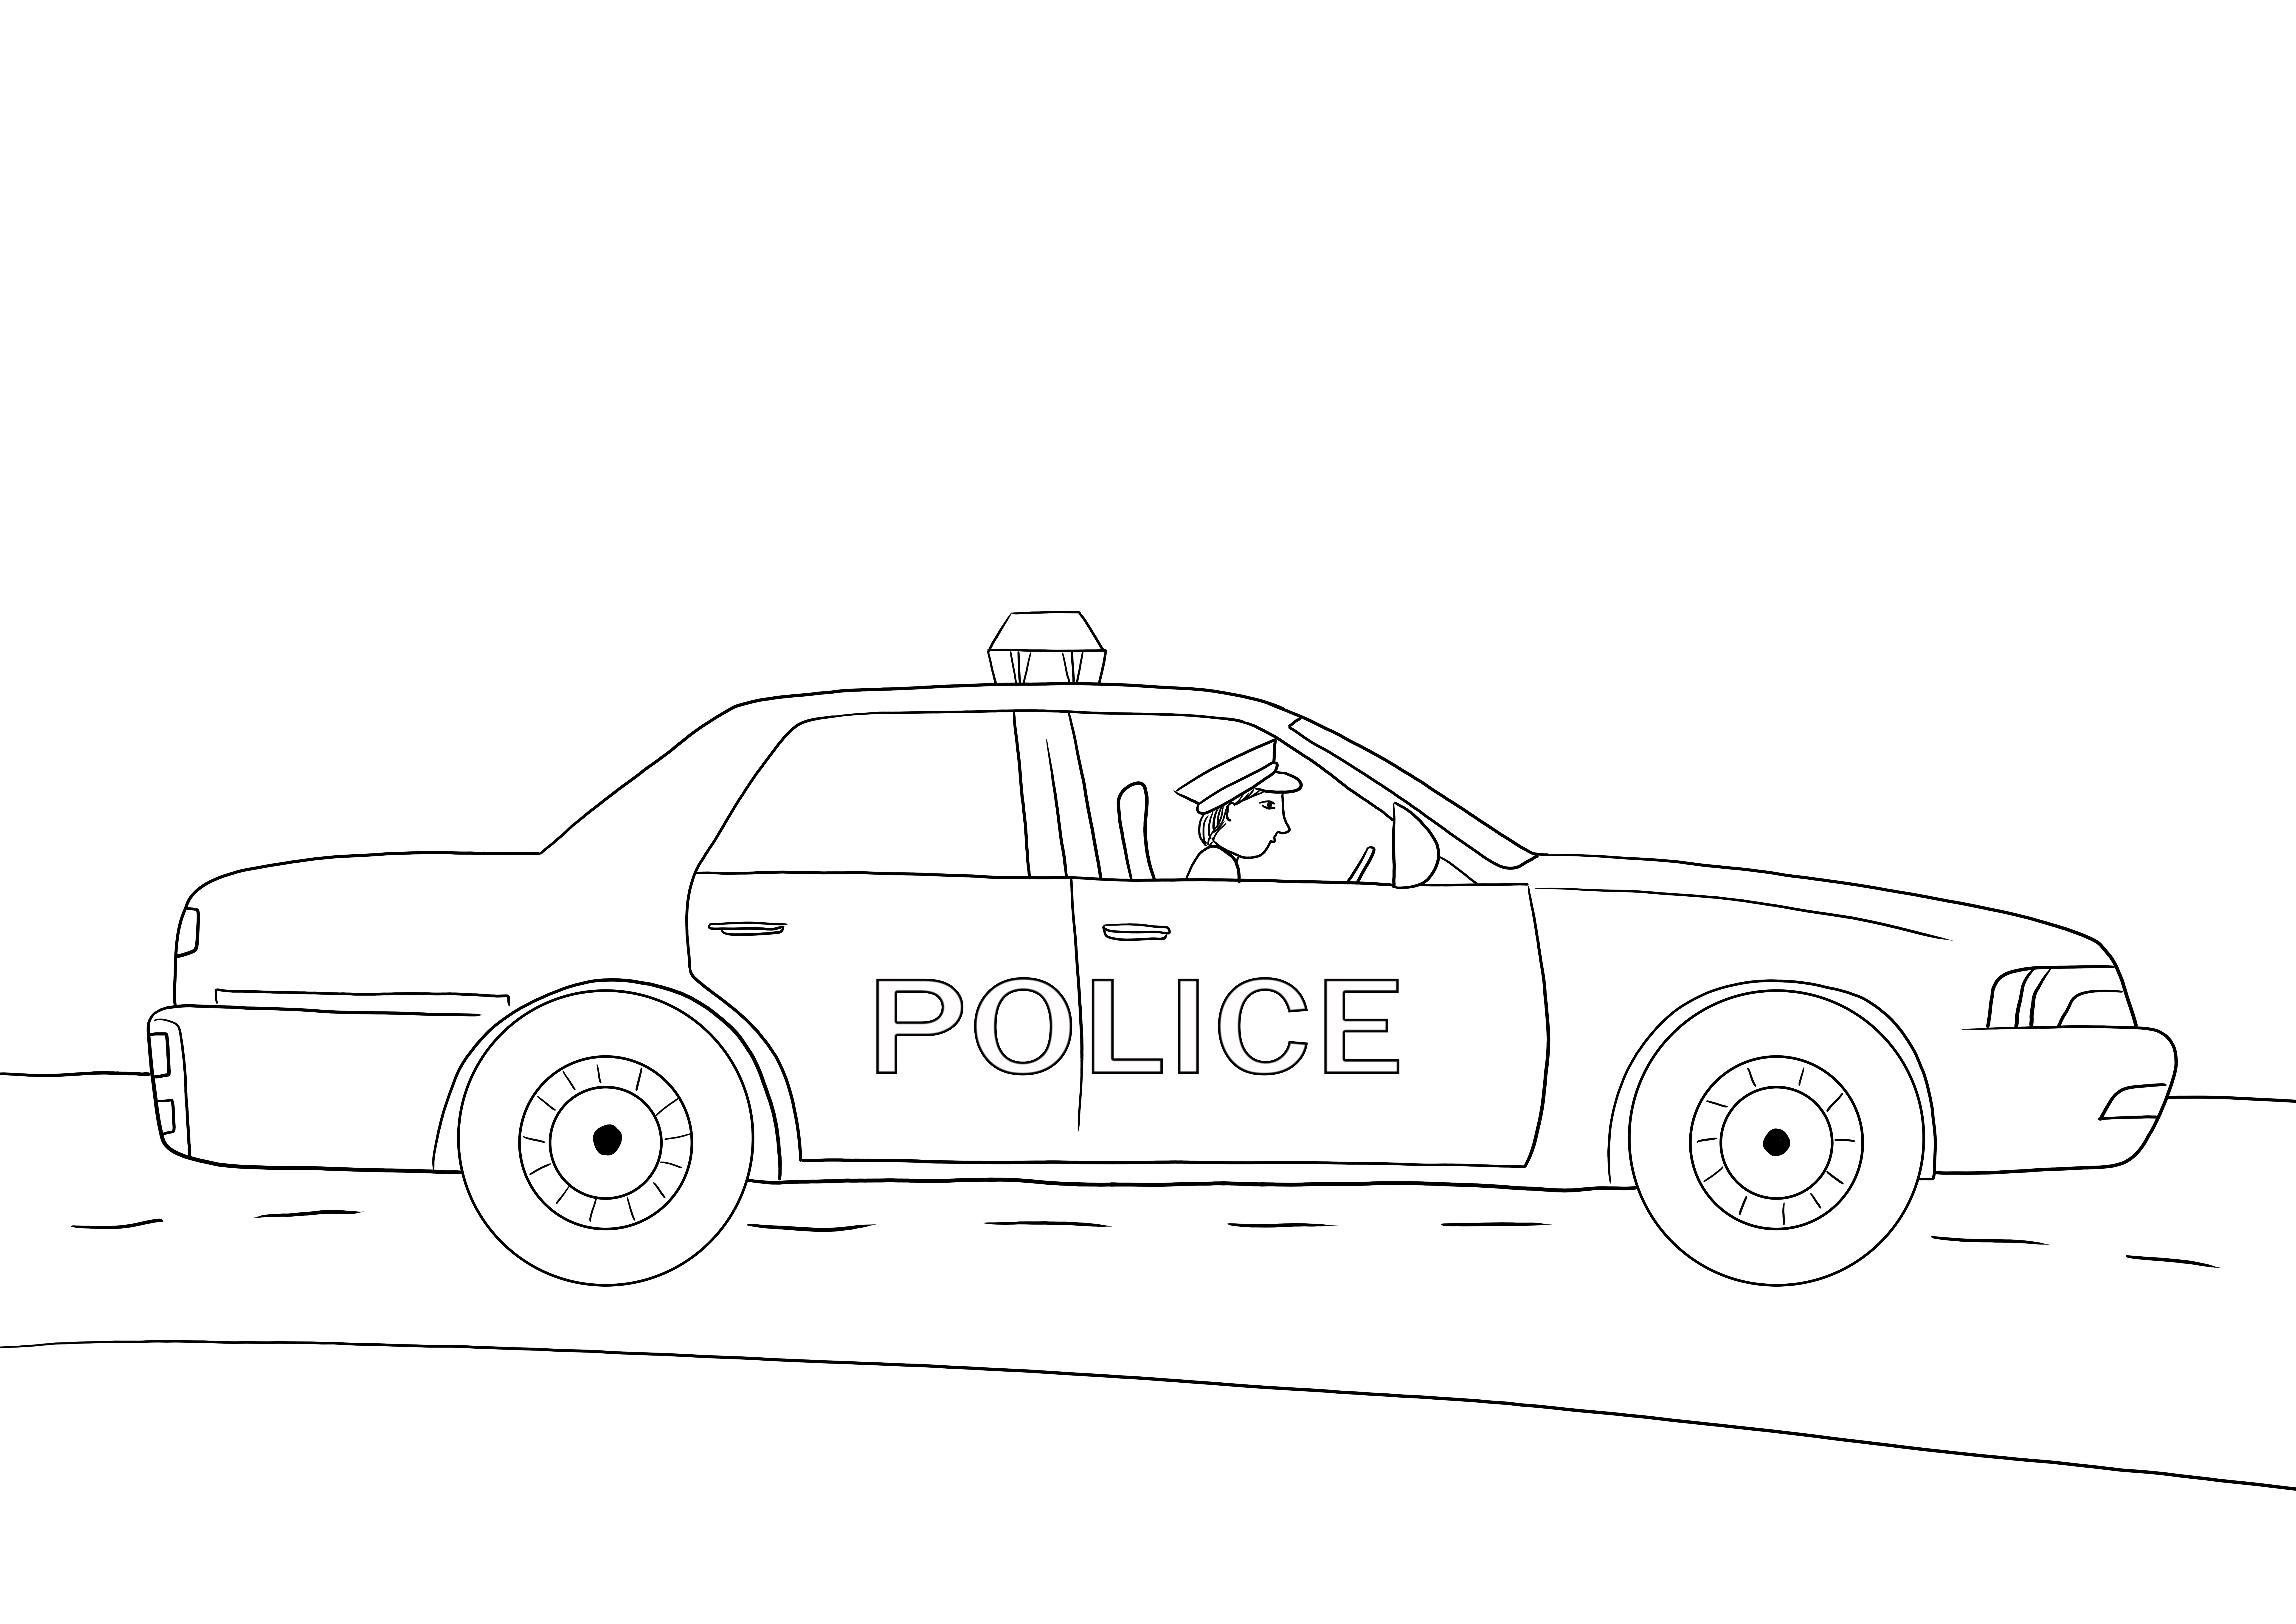 Impressão gratuita de carros de polícia para todos os amantes de carros em folha colorida